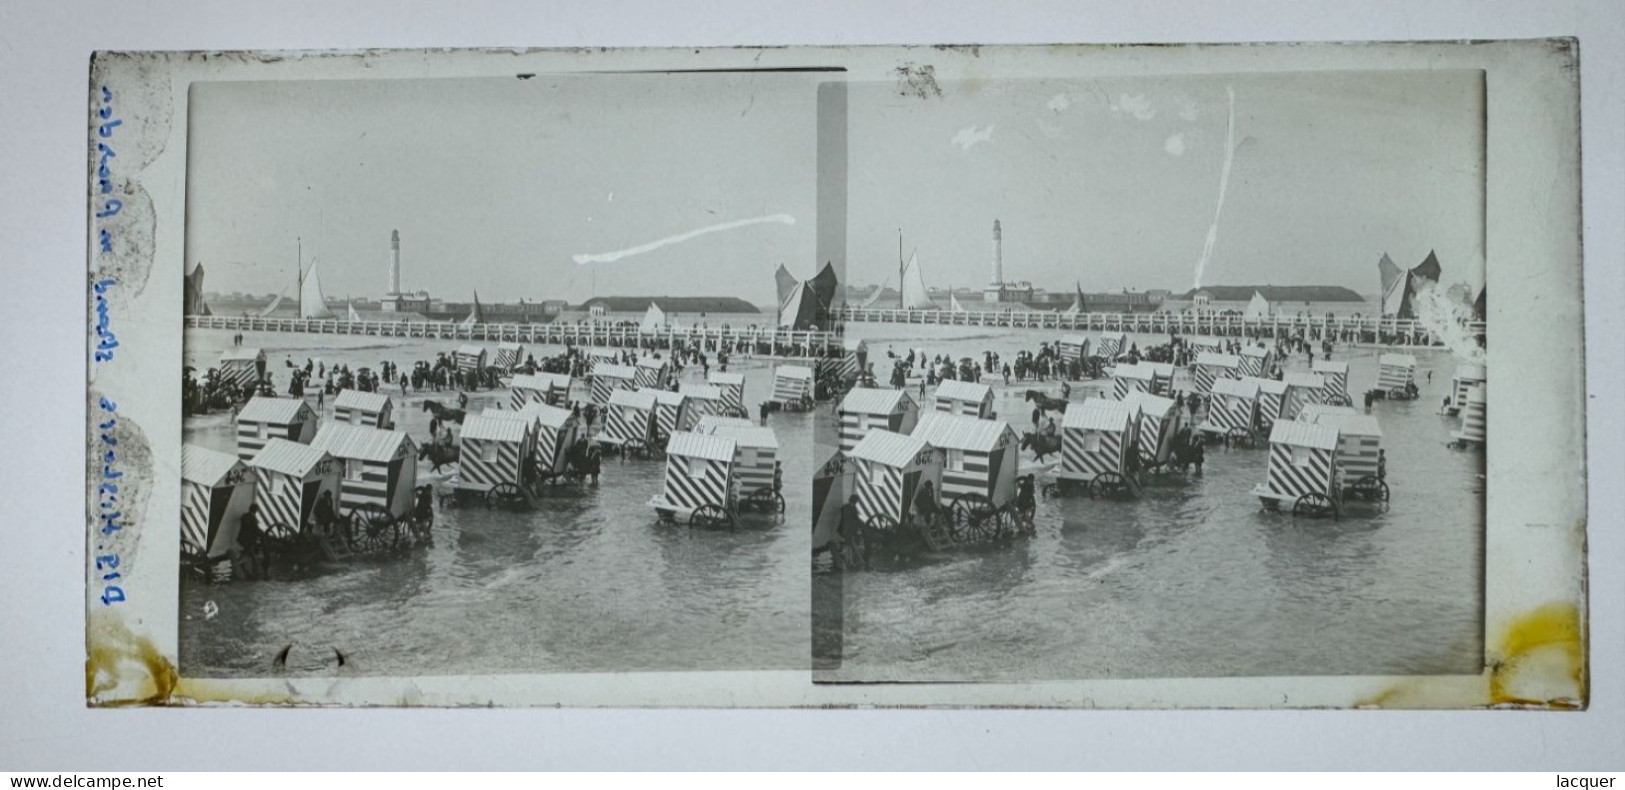 Collection De 6 Photographies Stéréo Sur Verre De La Vie Sur La Plage à Ostende, Belgique V. 1900 8,5 X 17,5 Cm - Stereo-Photographie